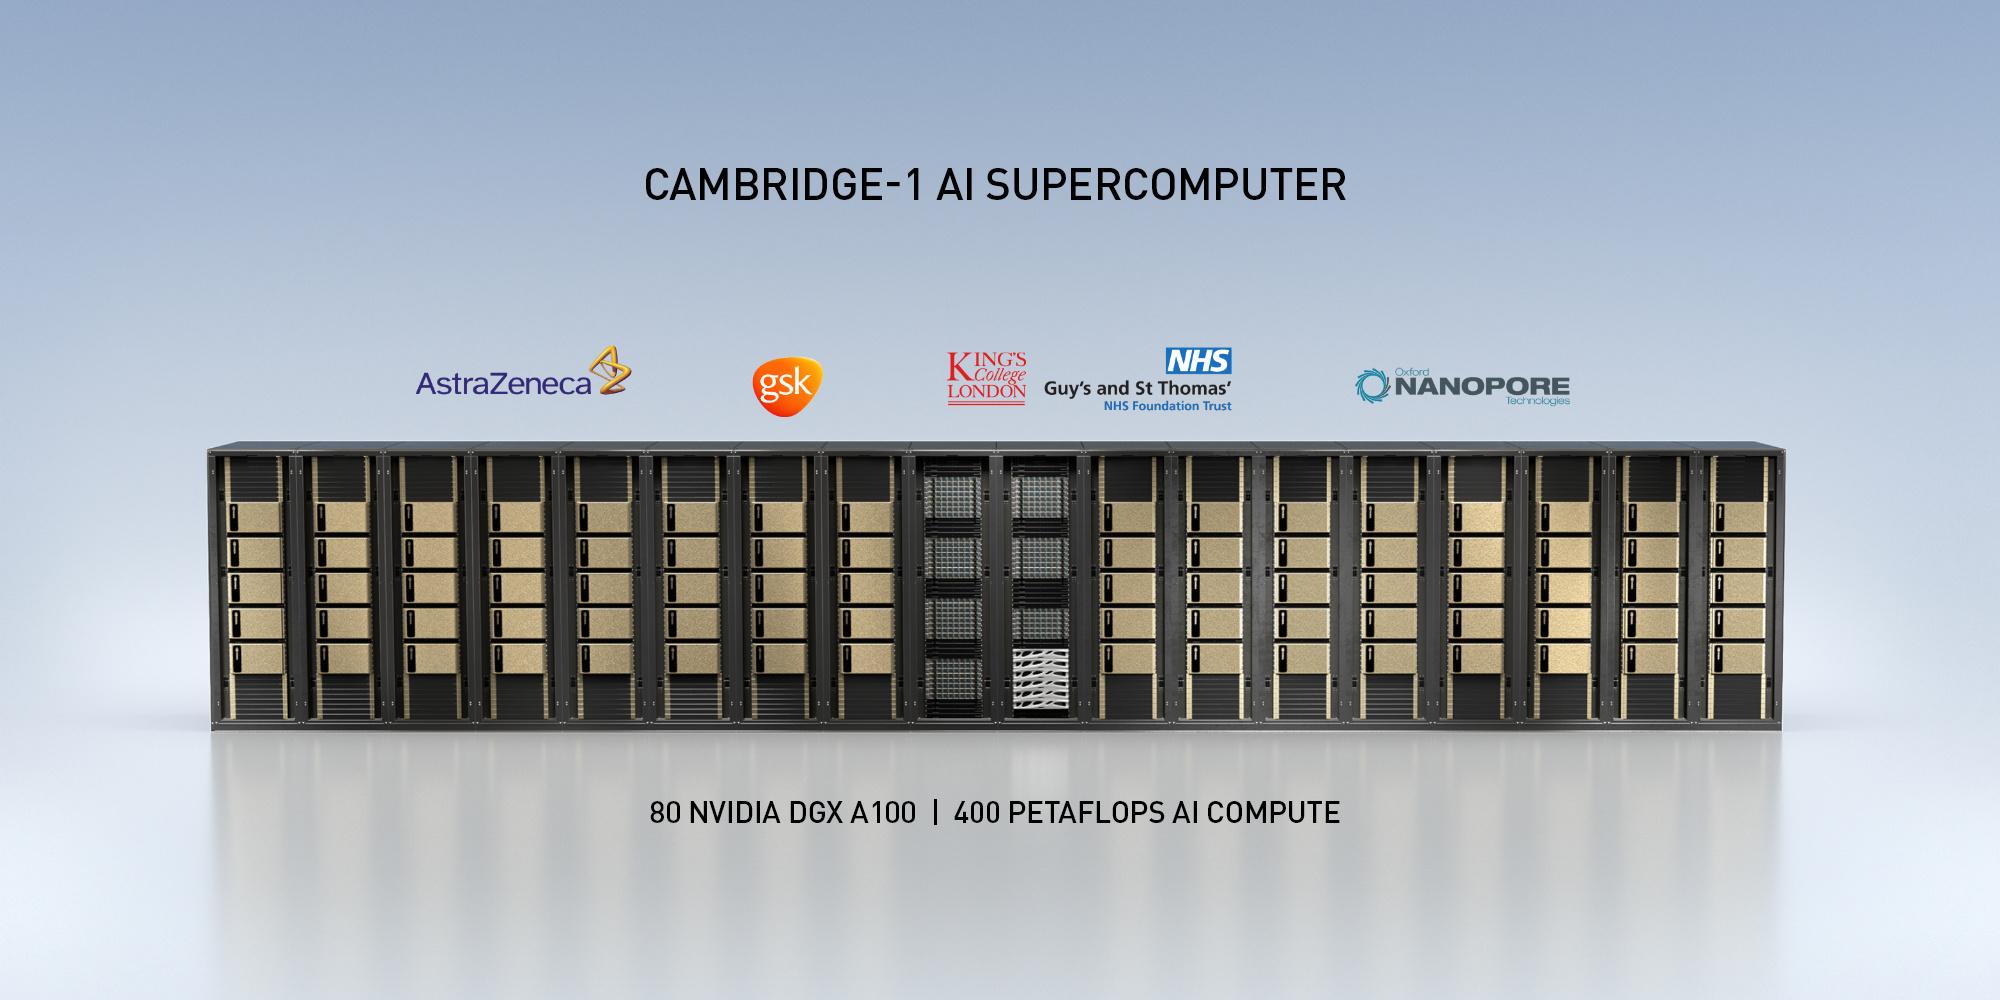 De Cambridge-1 supercomputer van Nvidia